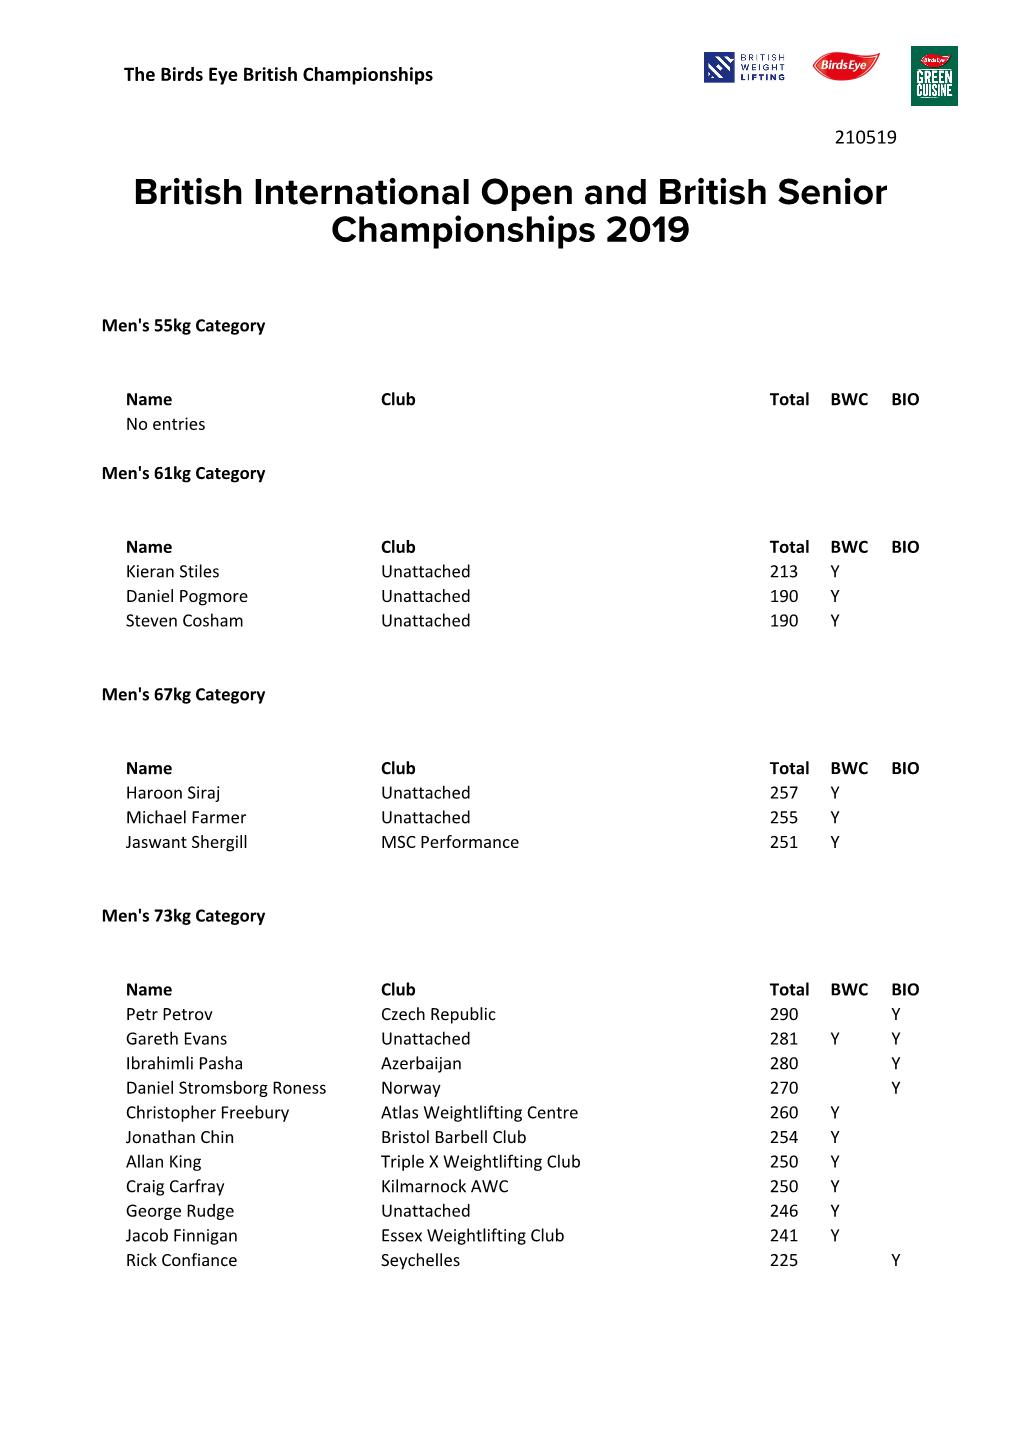 British International Open and British Senior Championships 2019